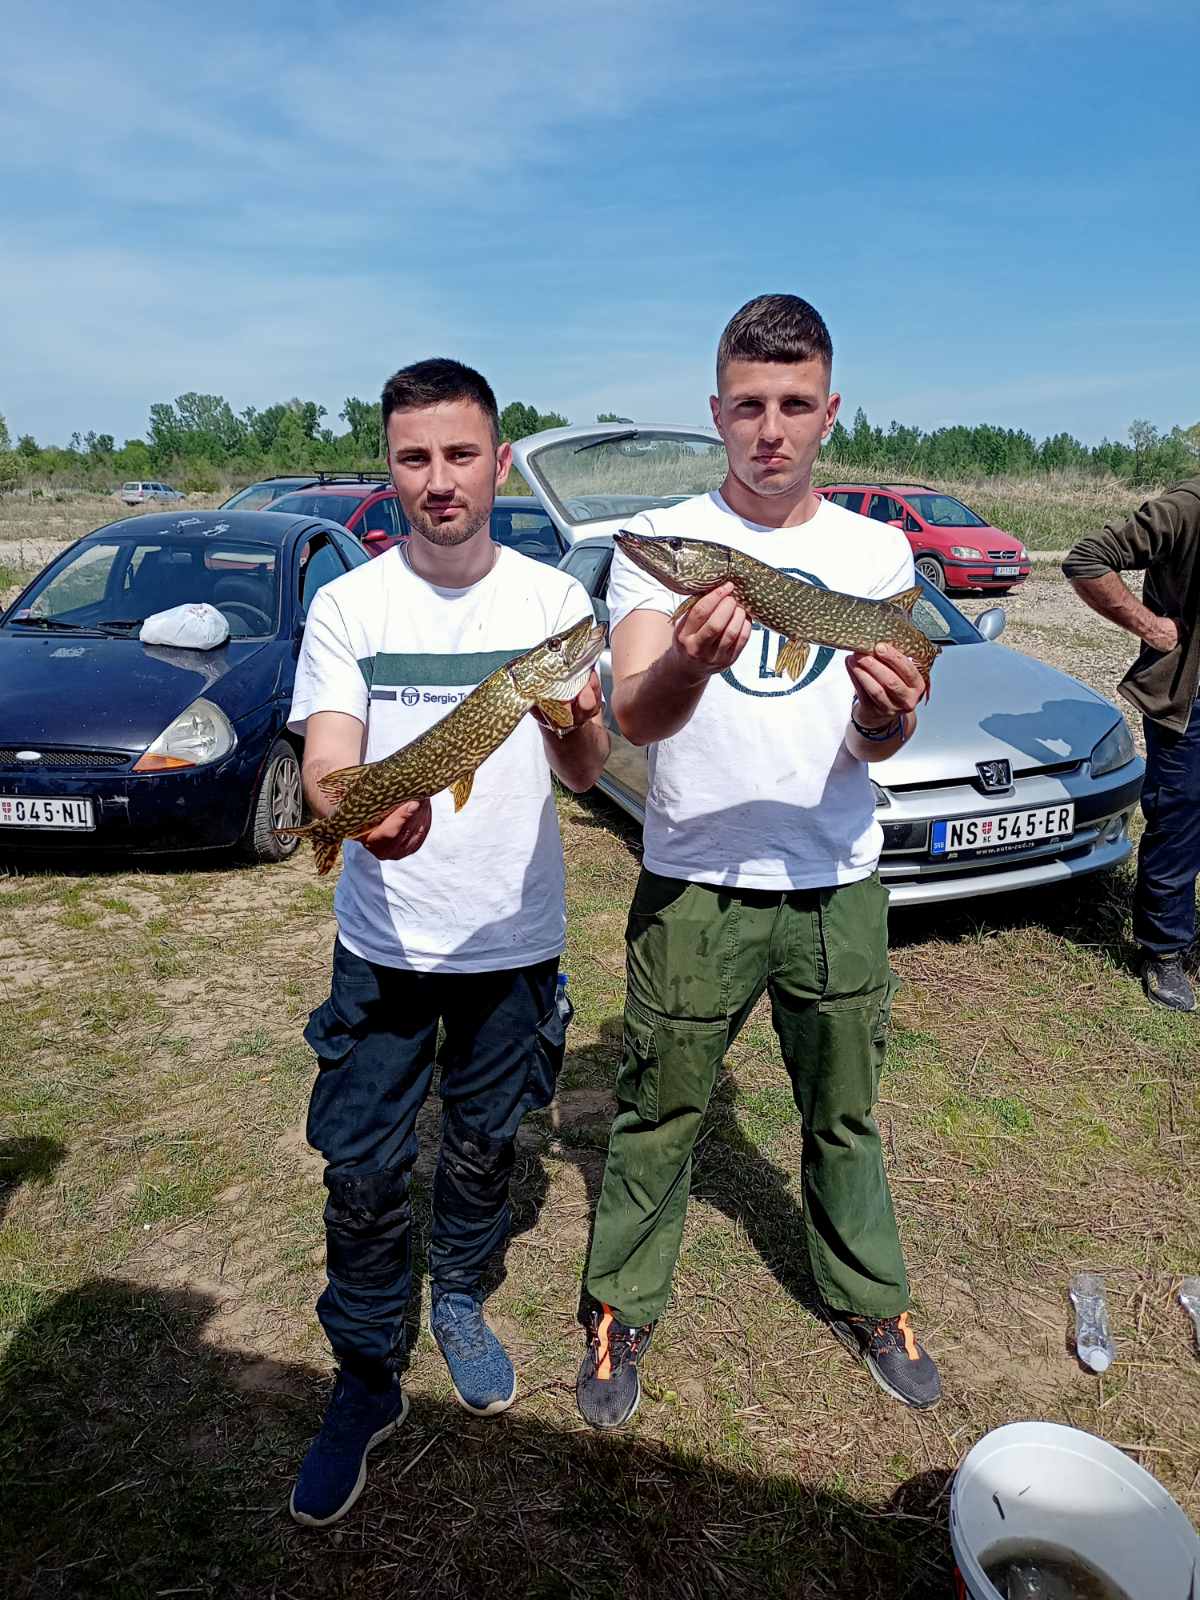 U Loznici održana 19.”Štukijada”, pojedinačno takmičenje u pecanju štuke okupilo veliki broj takmičara (FOTO+VIDEO)